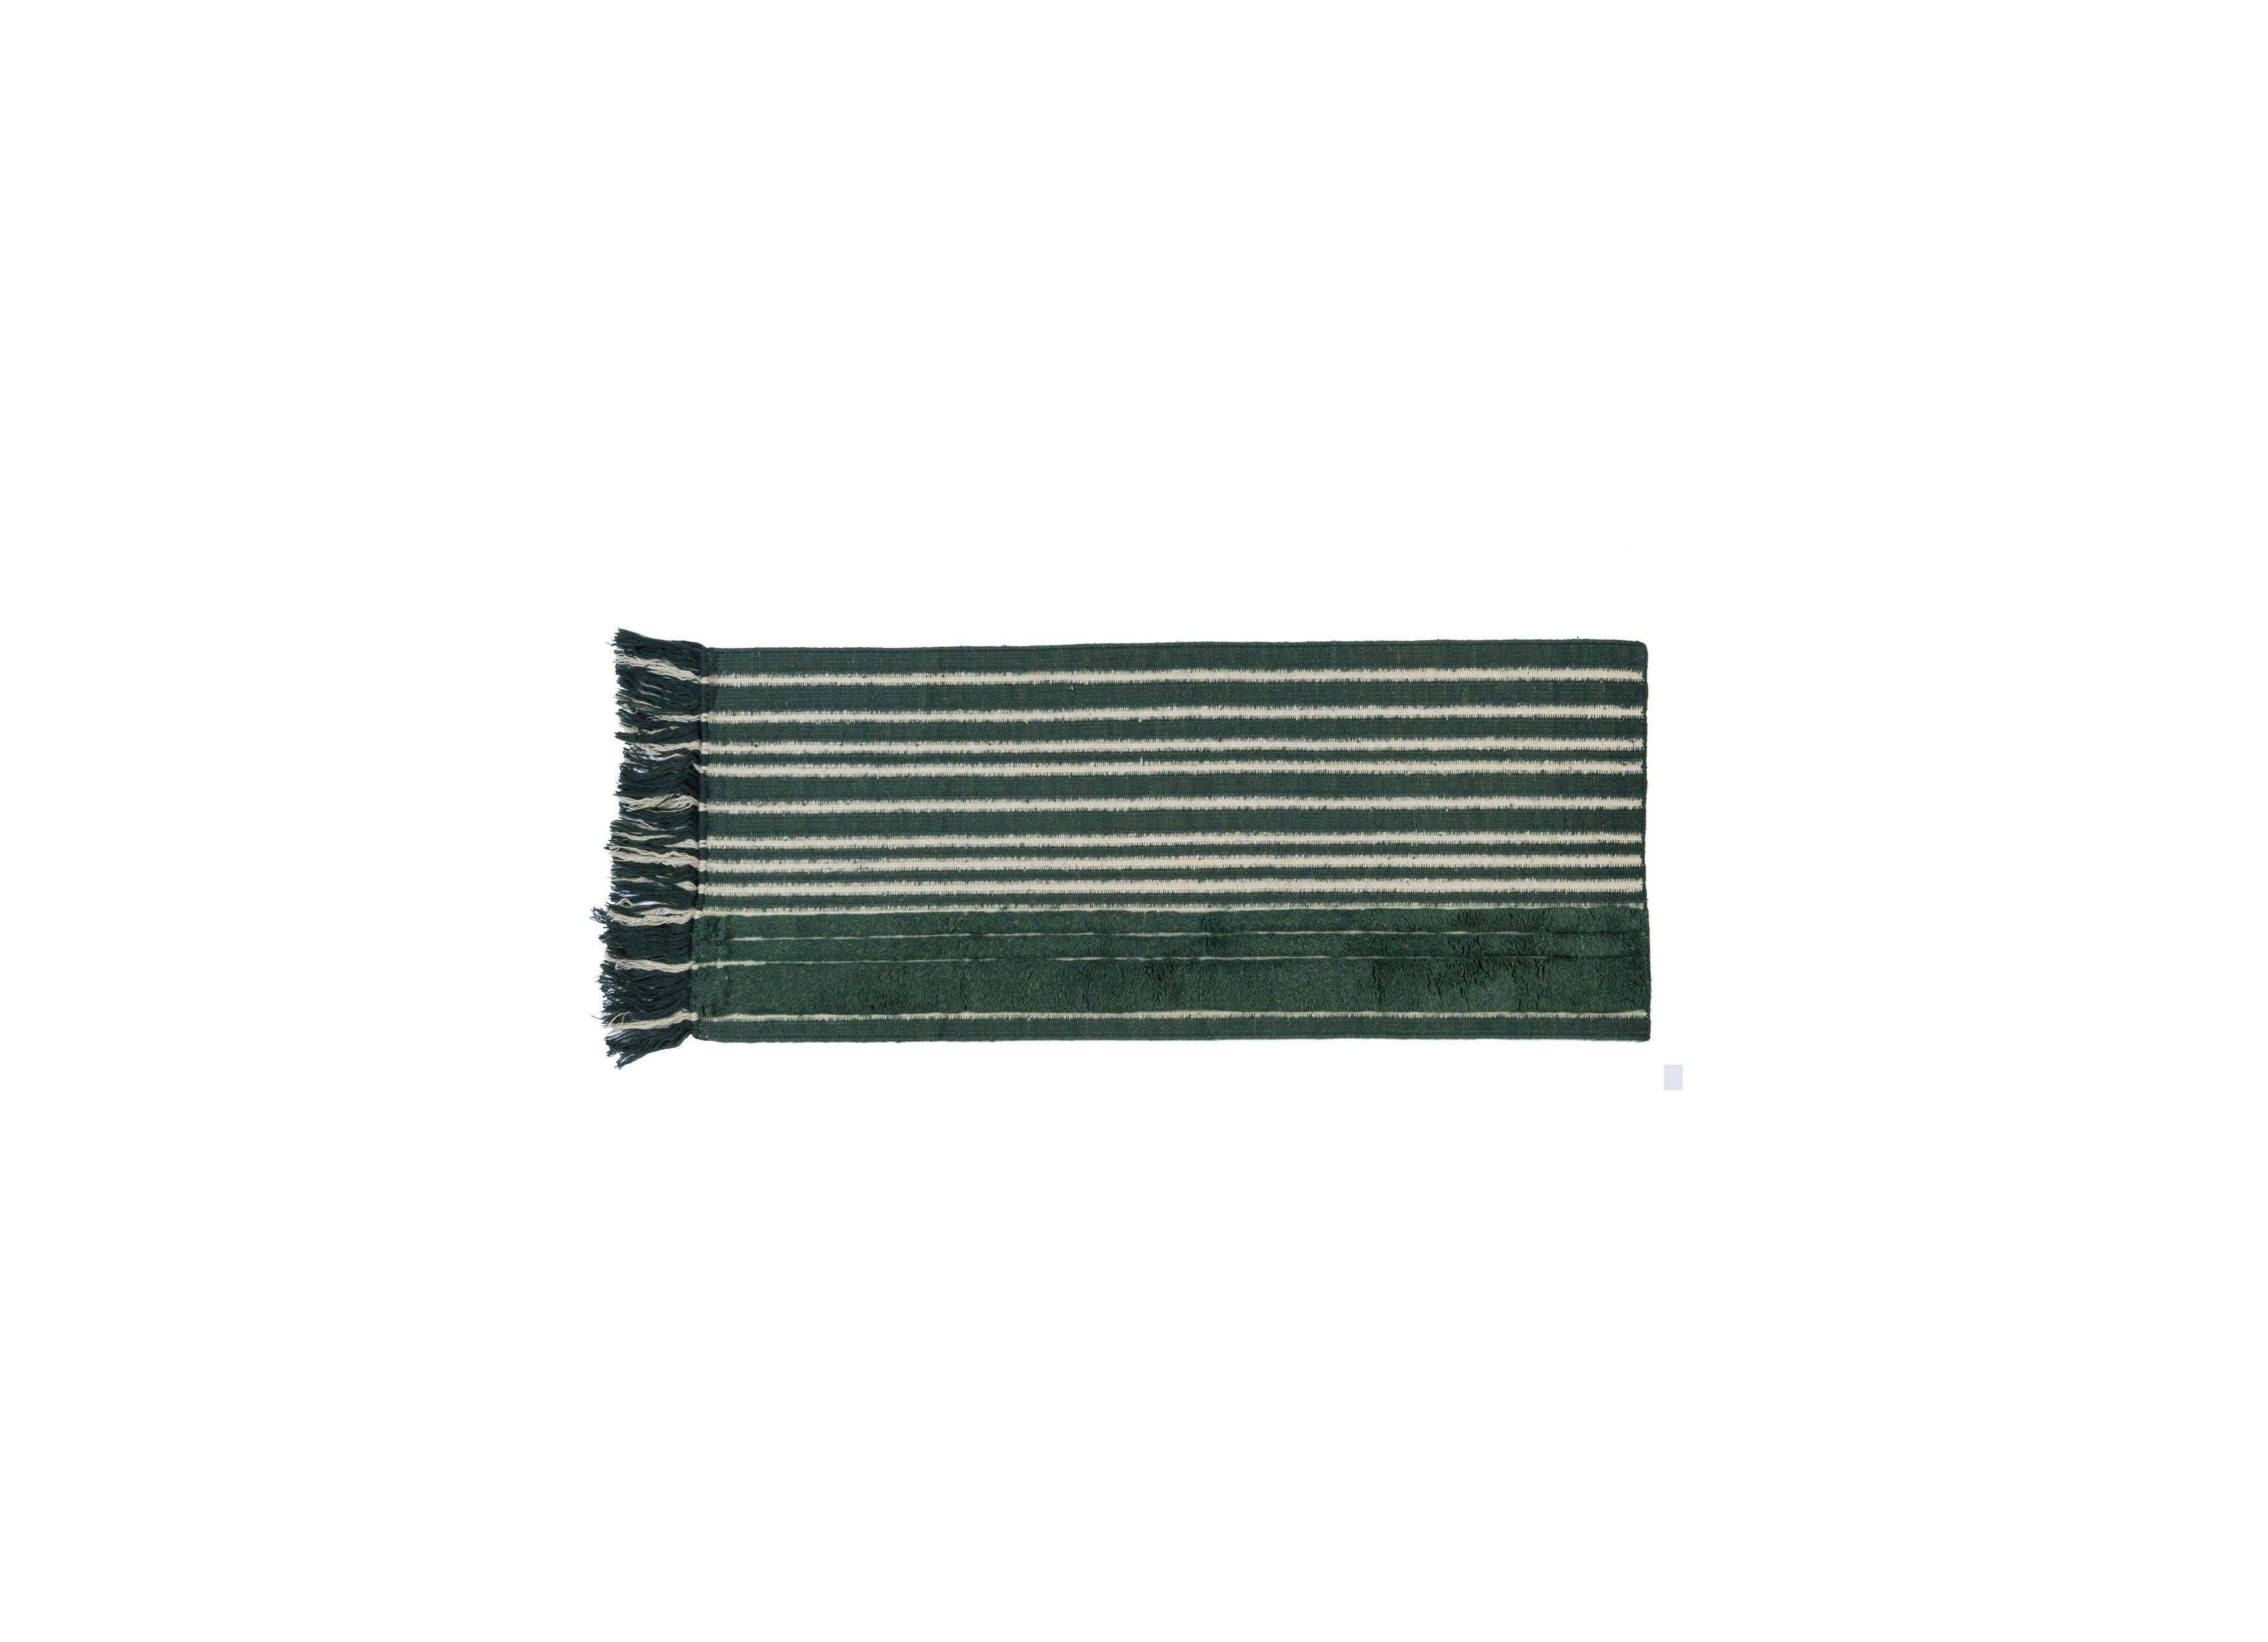 Tapis noué à la main No. 281 freeplay de Lyk Carpet
Dimensions : L 60 x L 150 cm.
Matériaux : 100% laine des hauts plateaux tibétains, laine vierge peignée et filée à la main, laine naturelle teintée dans la masse, 100 nœuds par pouce carré.
Les